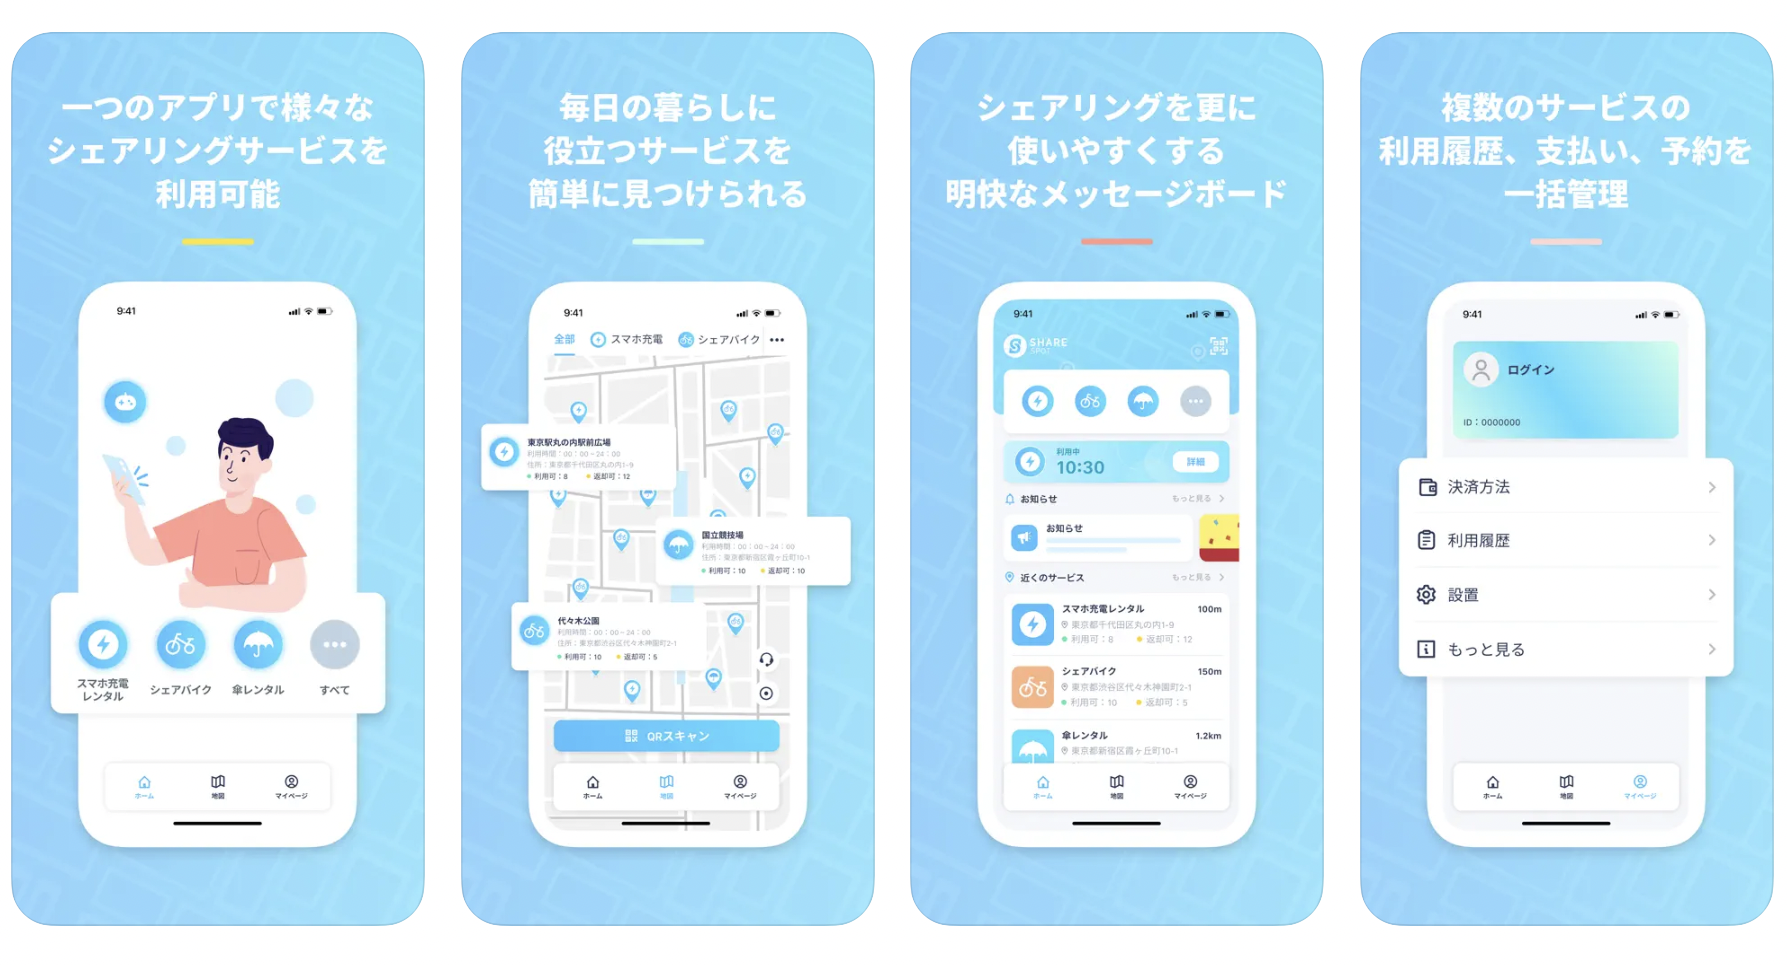 【事業構想】シェアサービスをもっと簡単に 日本初のプラットフォームが登場